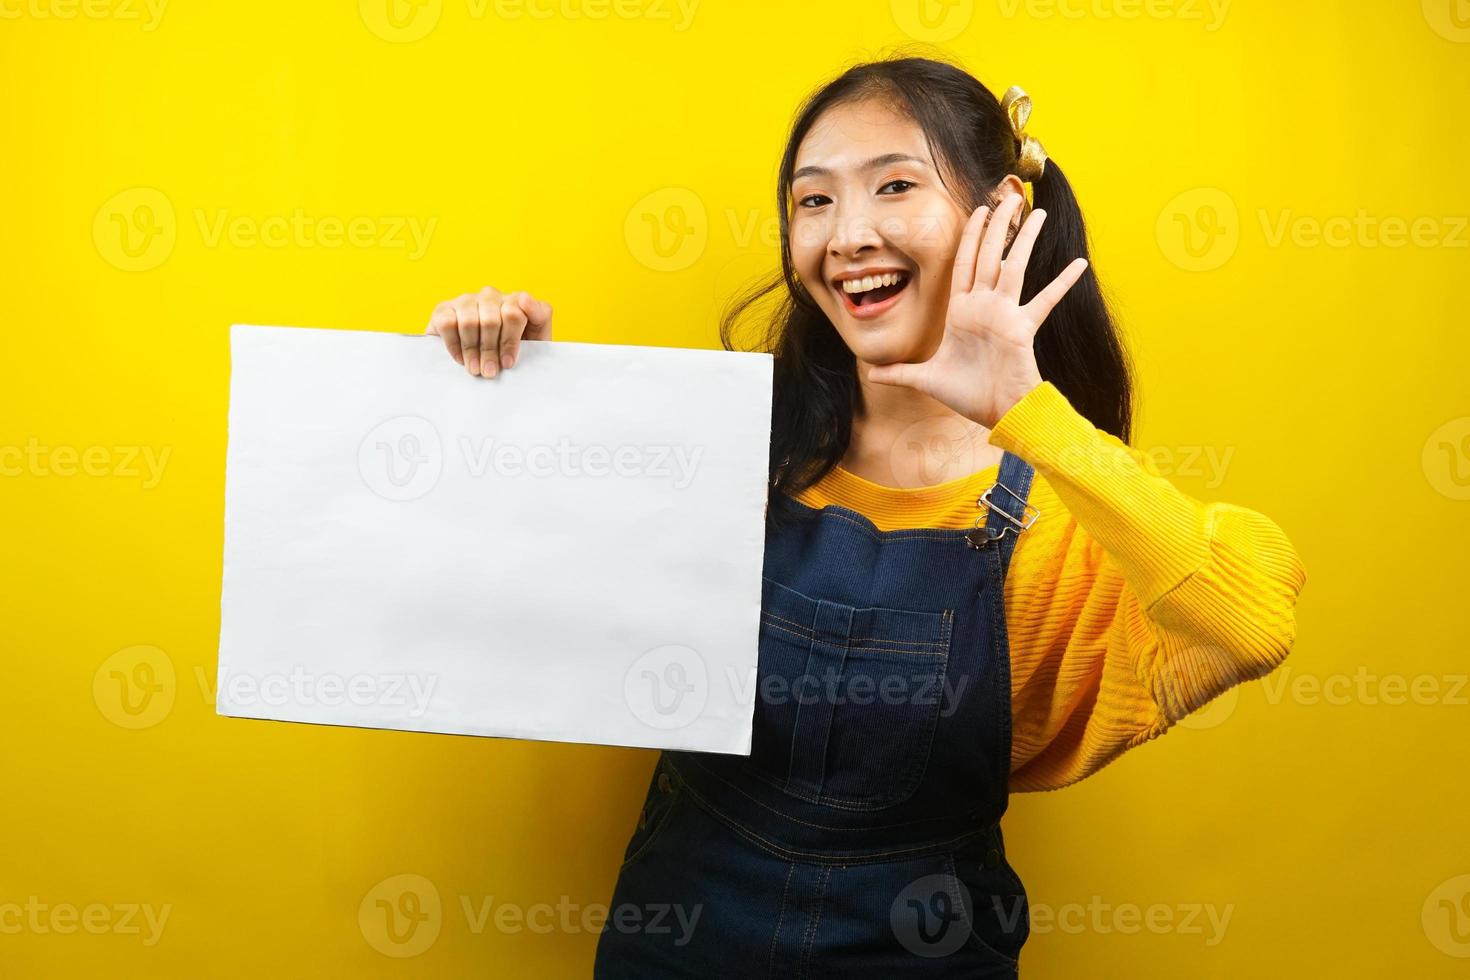 jolie et mignonne jeune femme joyeuse tenant une bannière vide vierge, une pancarte, un tableau blanc, un panneau vierge, un panneau publicitaire blanc, présentant quelque chose dans l'espace de copie, promotion photo